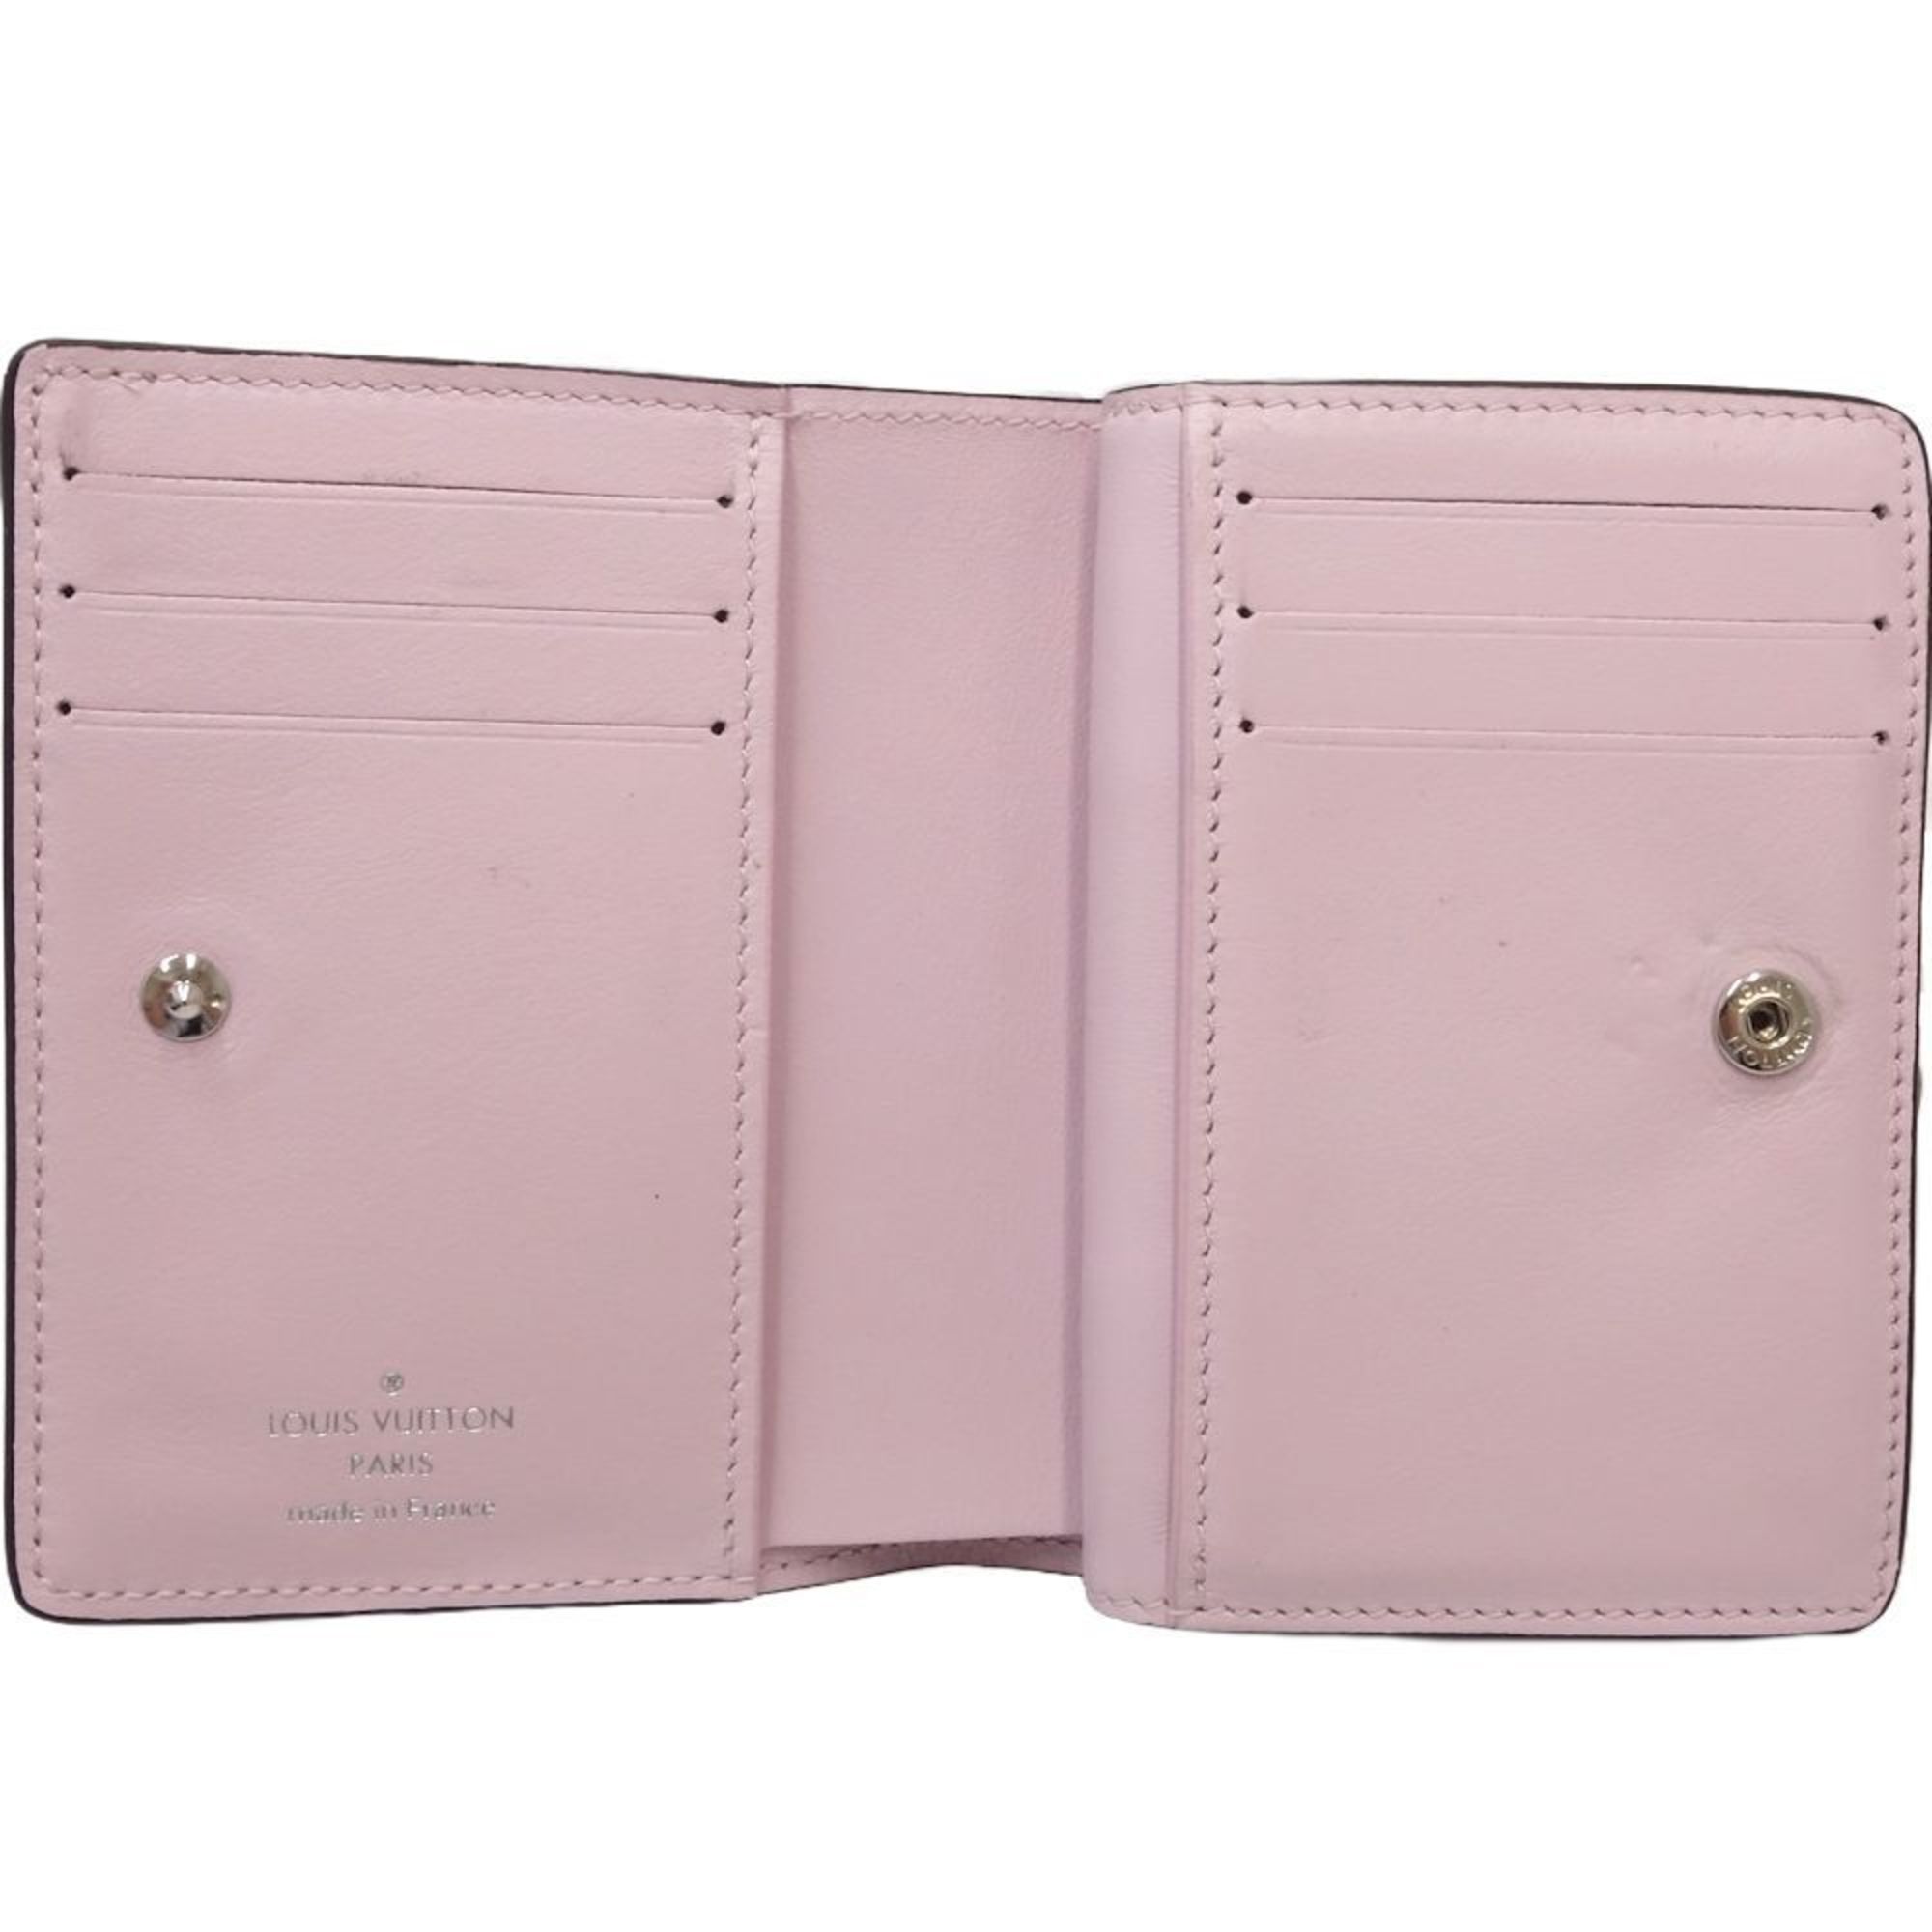 LOUIS VUITTON Louis Vuitton Bi-fold Wallet M82758 Portefeuille Ku Mahina Rose Jasmine 180493